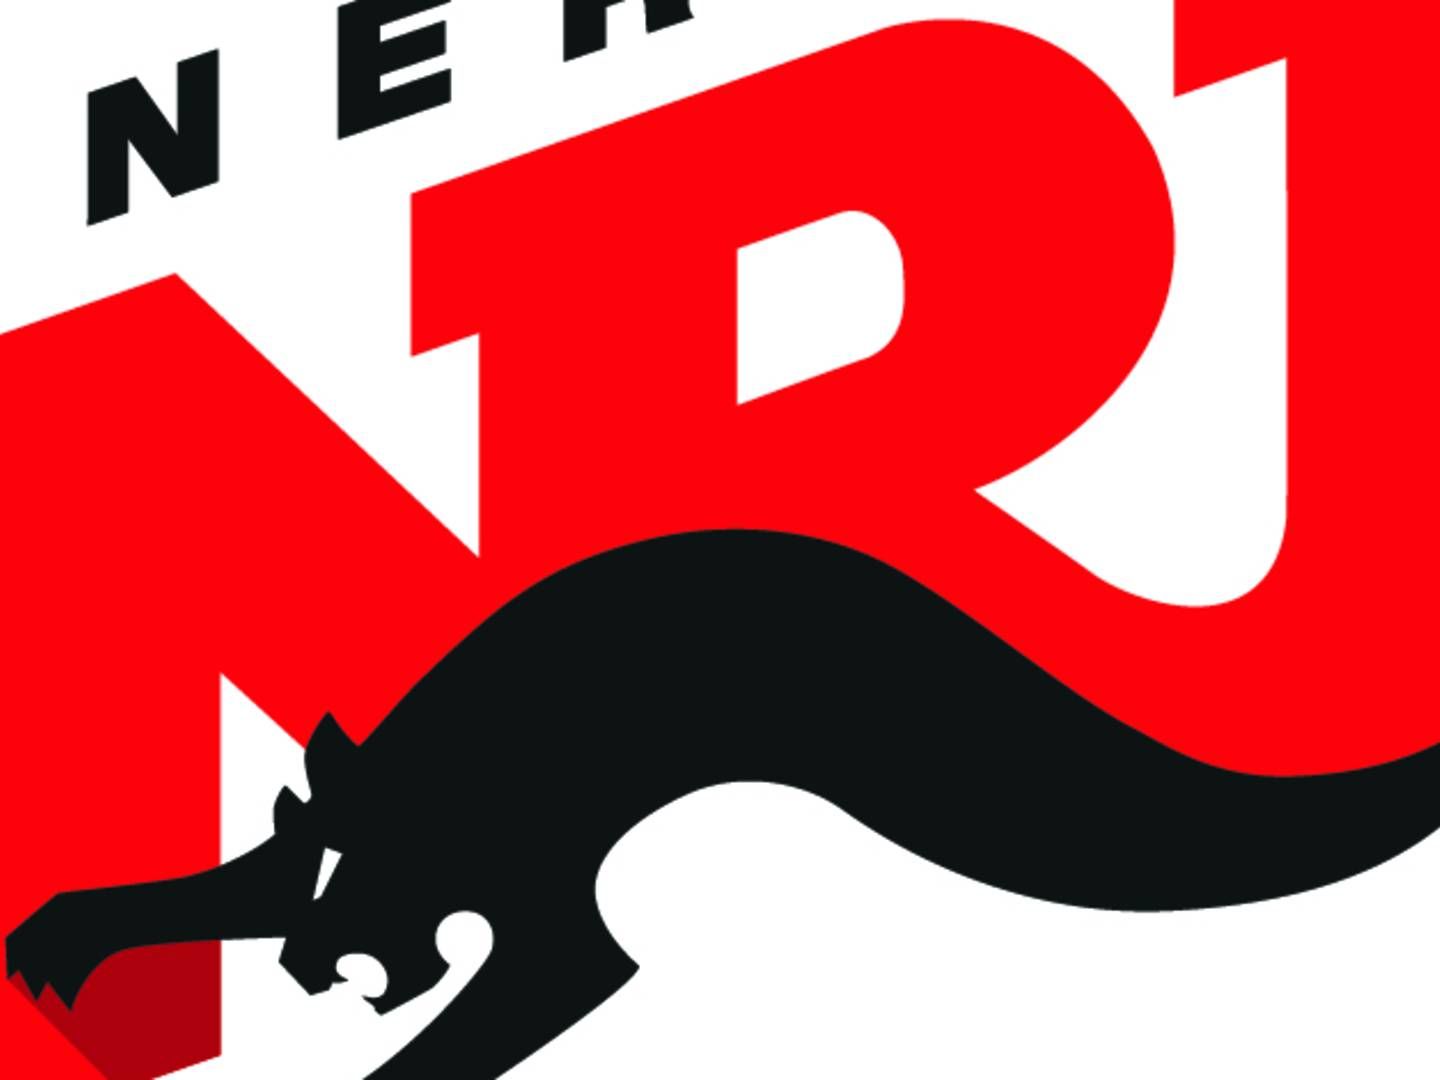 NRJ forlod det danske radiomarked i 2013, men vendte retur i 2018. | Foto: PR/NRJ